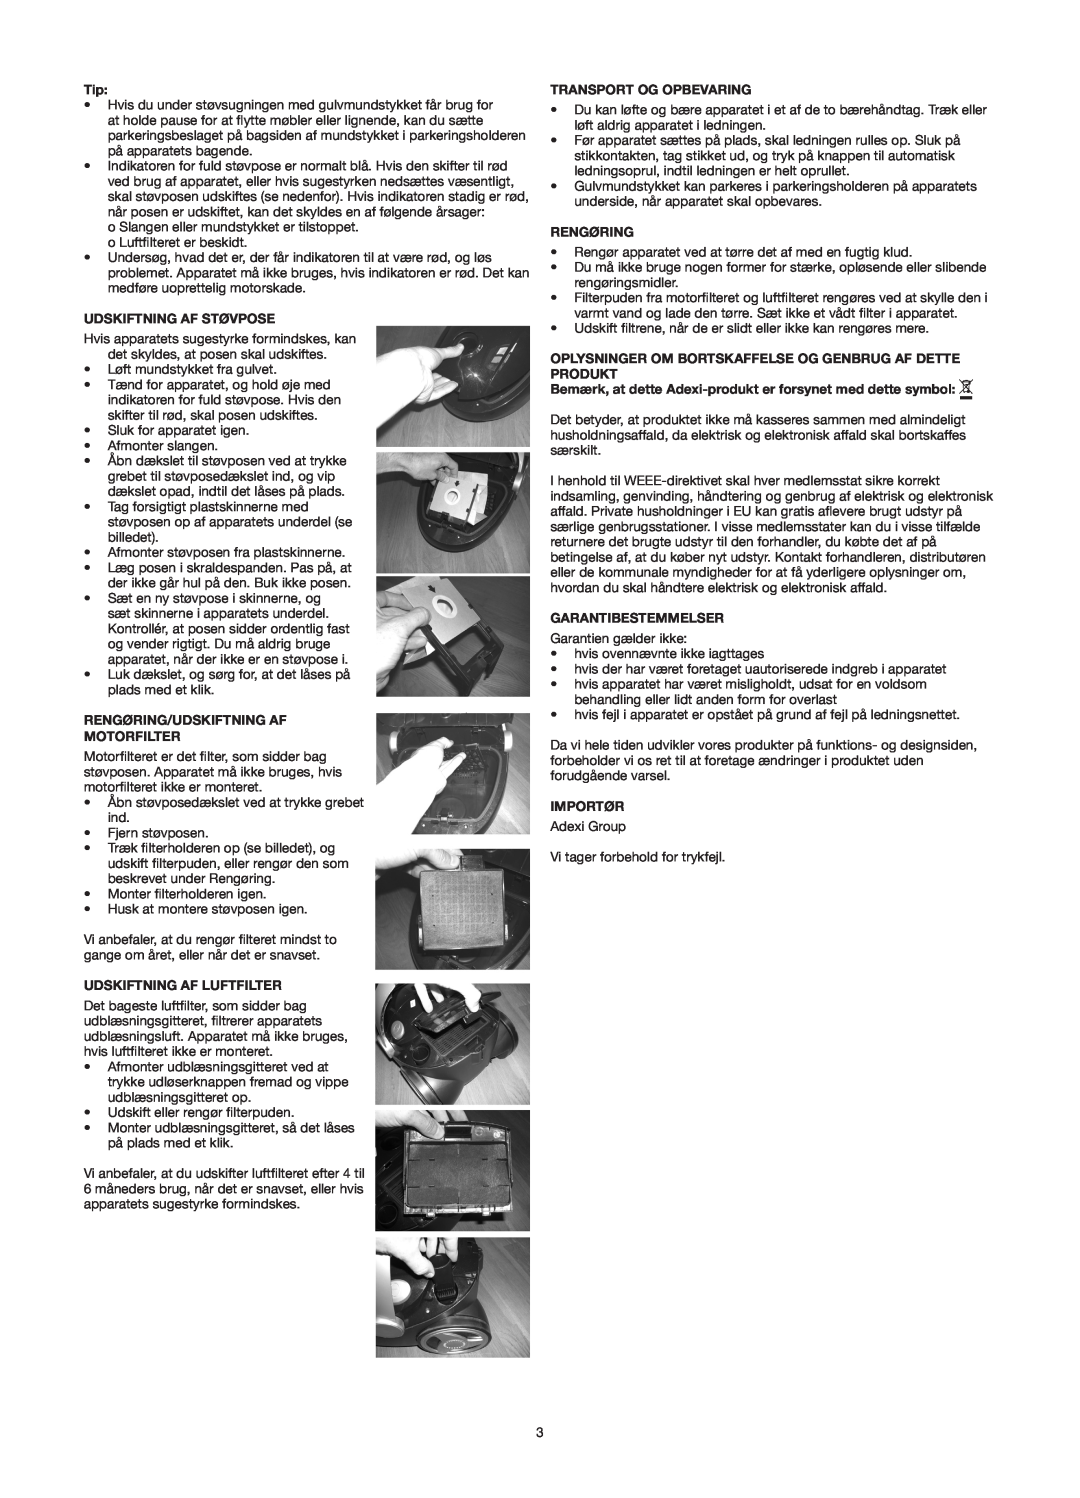 Melissa 640-141 manual Udskiftning Af Støvpose, Rengøring/Udskiftning Af Motorfilter, Udskiftning Af Luftfilter, Importør 